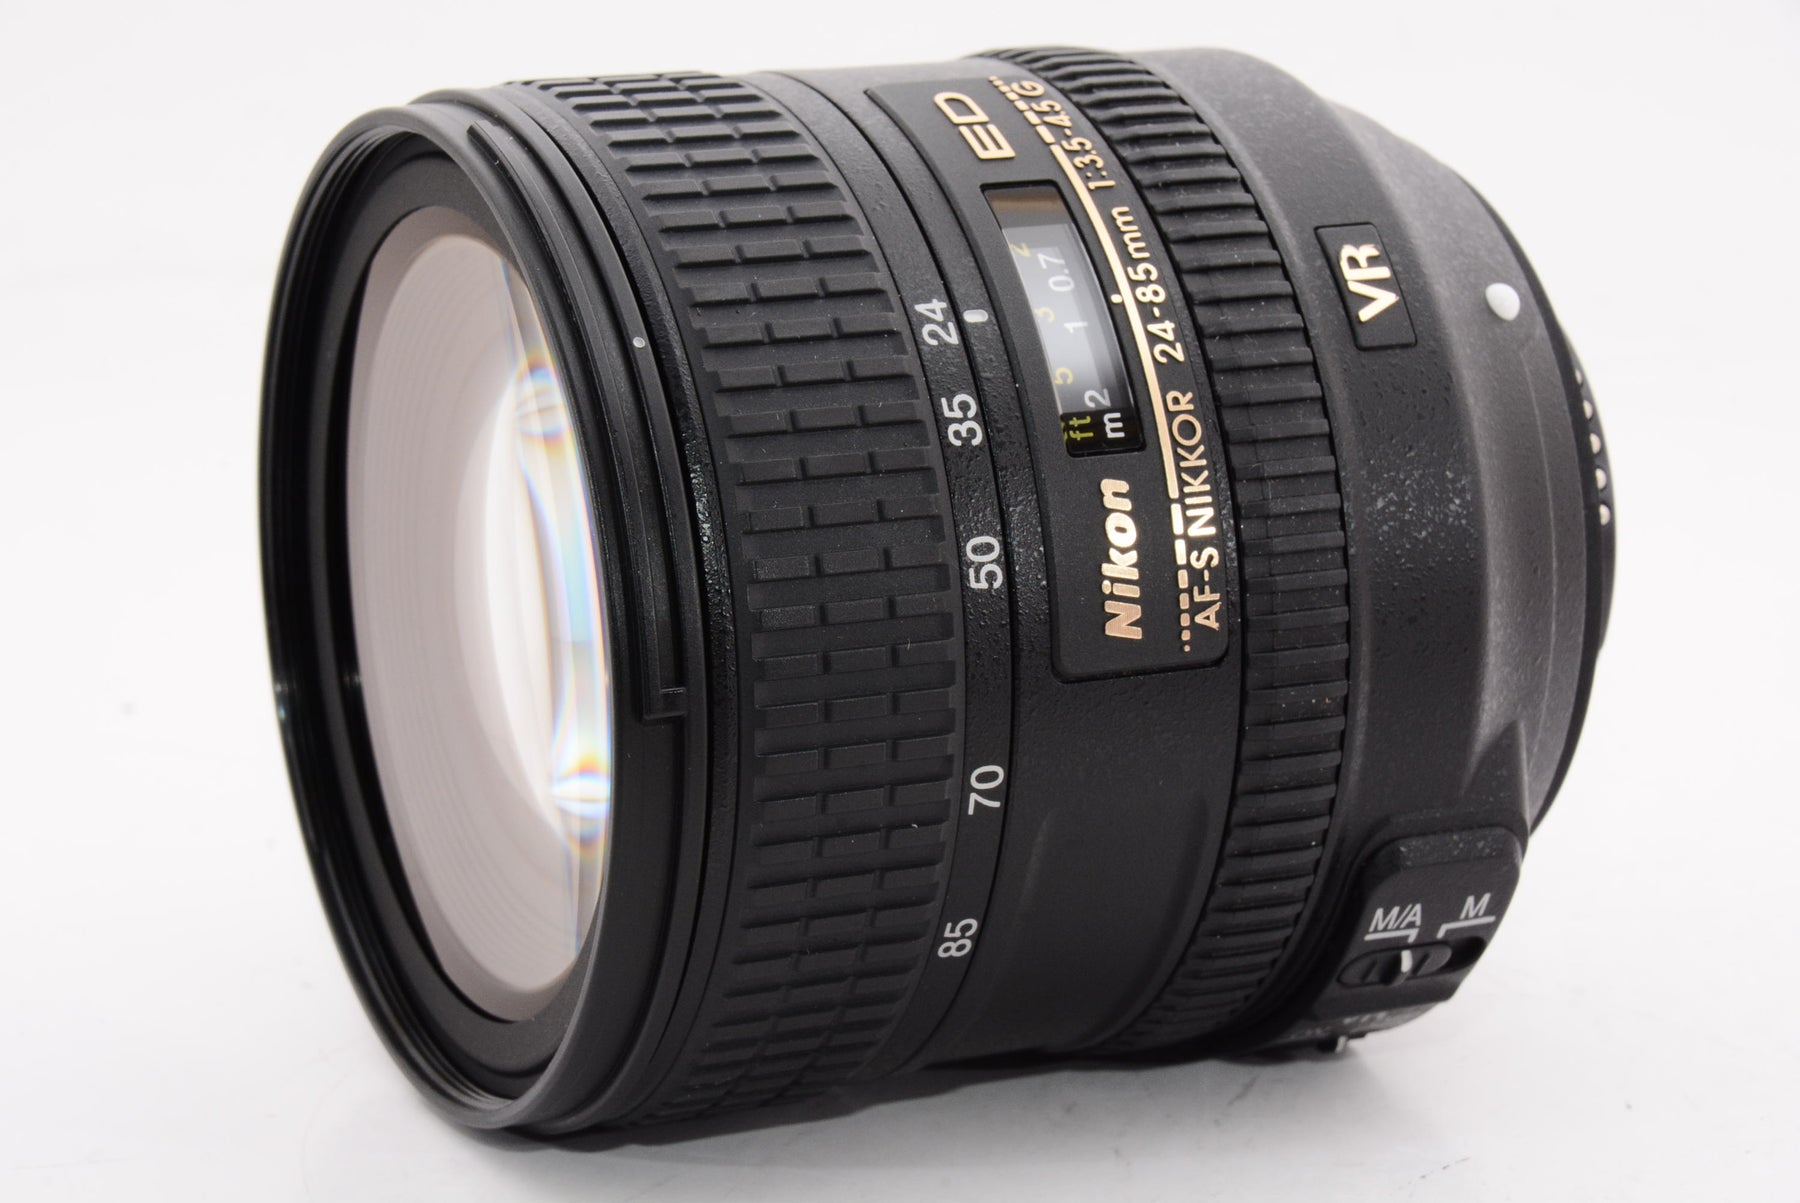 【外観特上級】Nikon 標準ズームレンズ AF-S NIKKOR 24-85mm f/3.5-4.5G ED VR フルサイズ対応